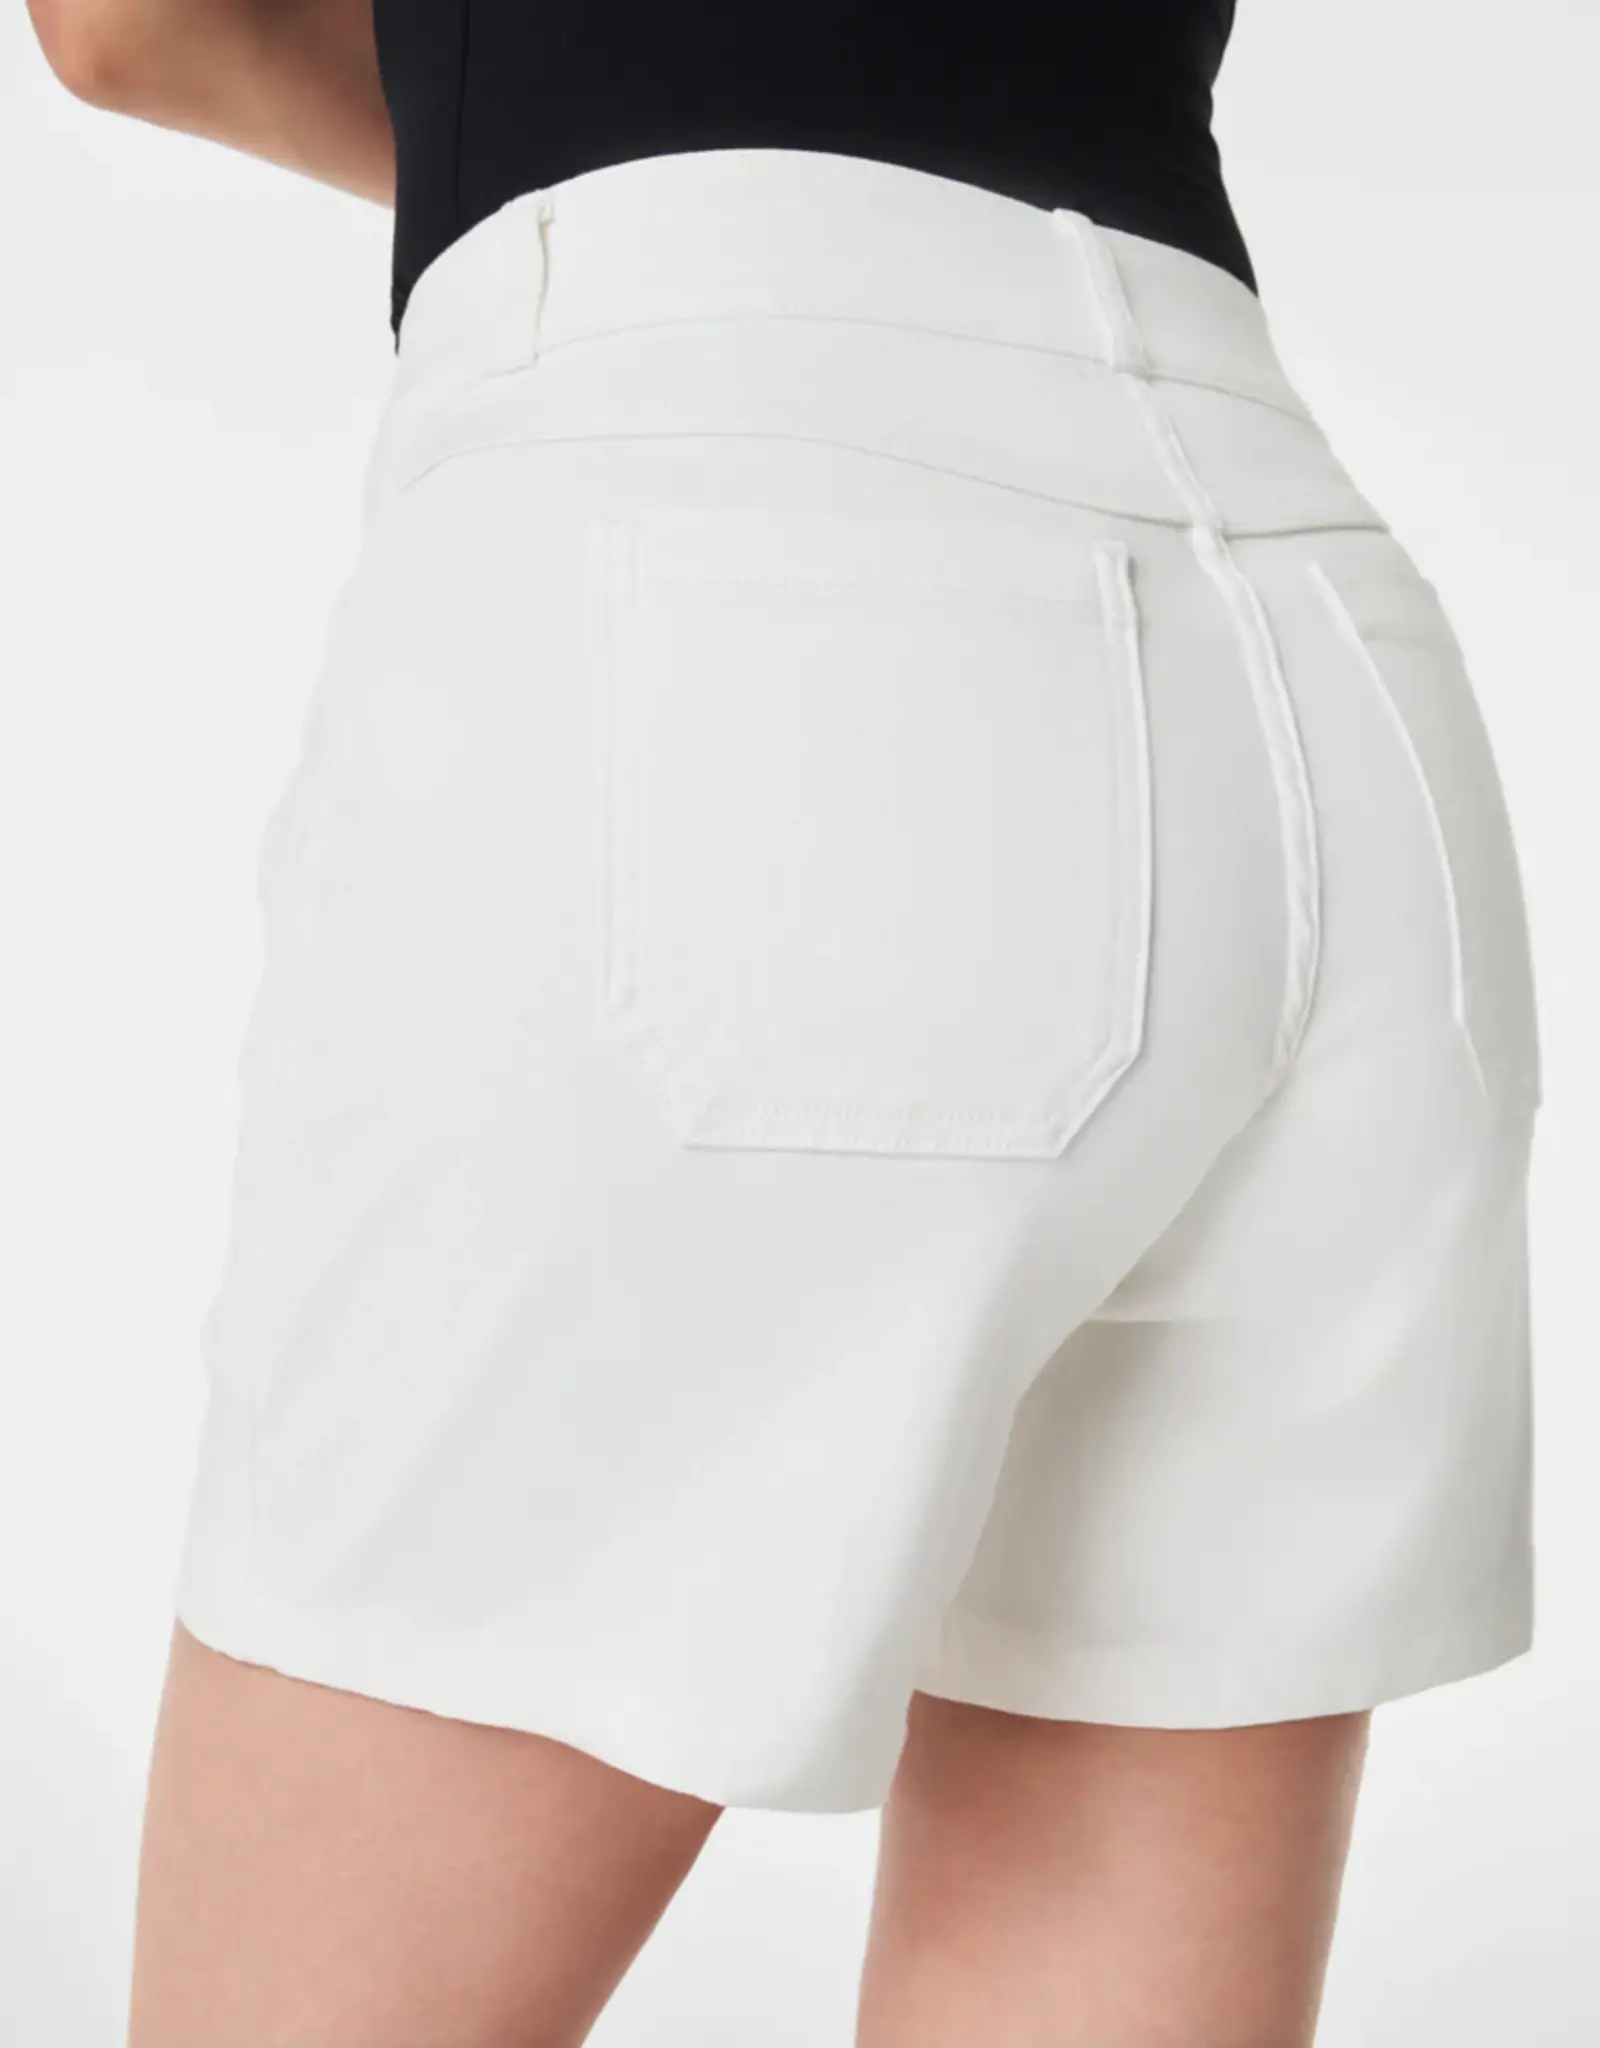 SPANX, Shorts, New Spanx White 5inch Stretch Twill Shorts L